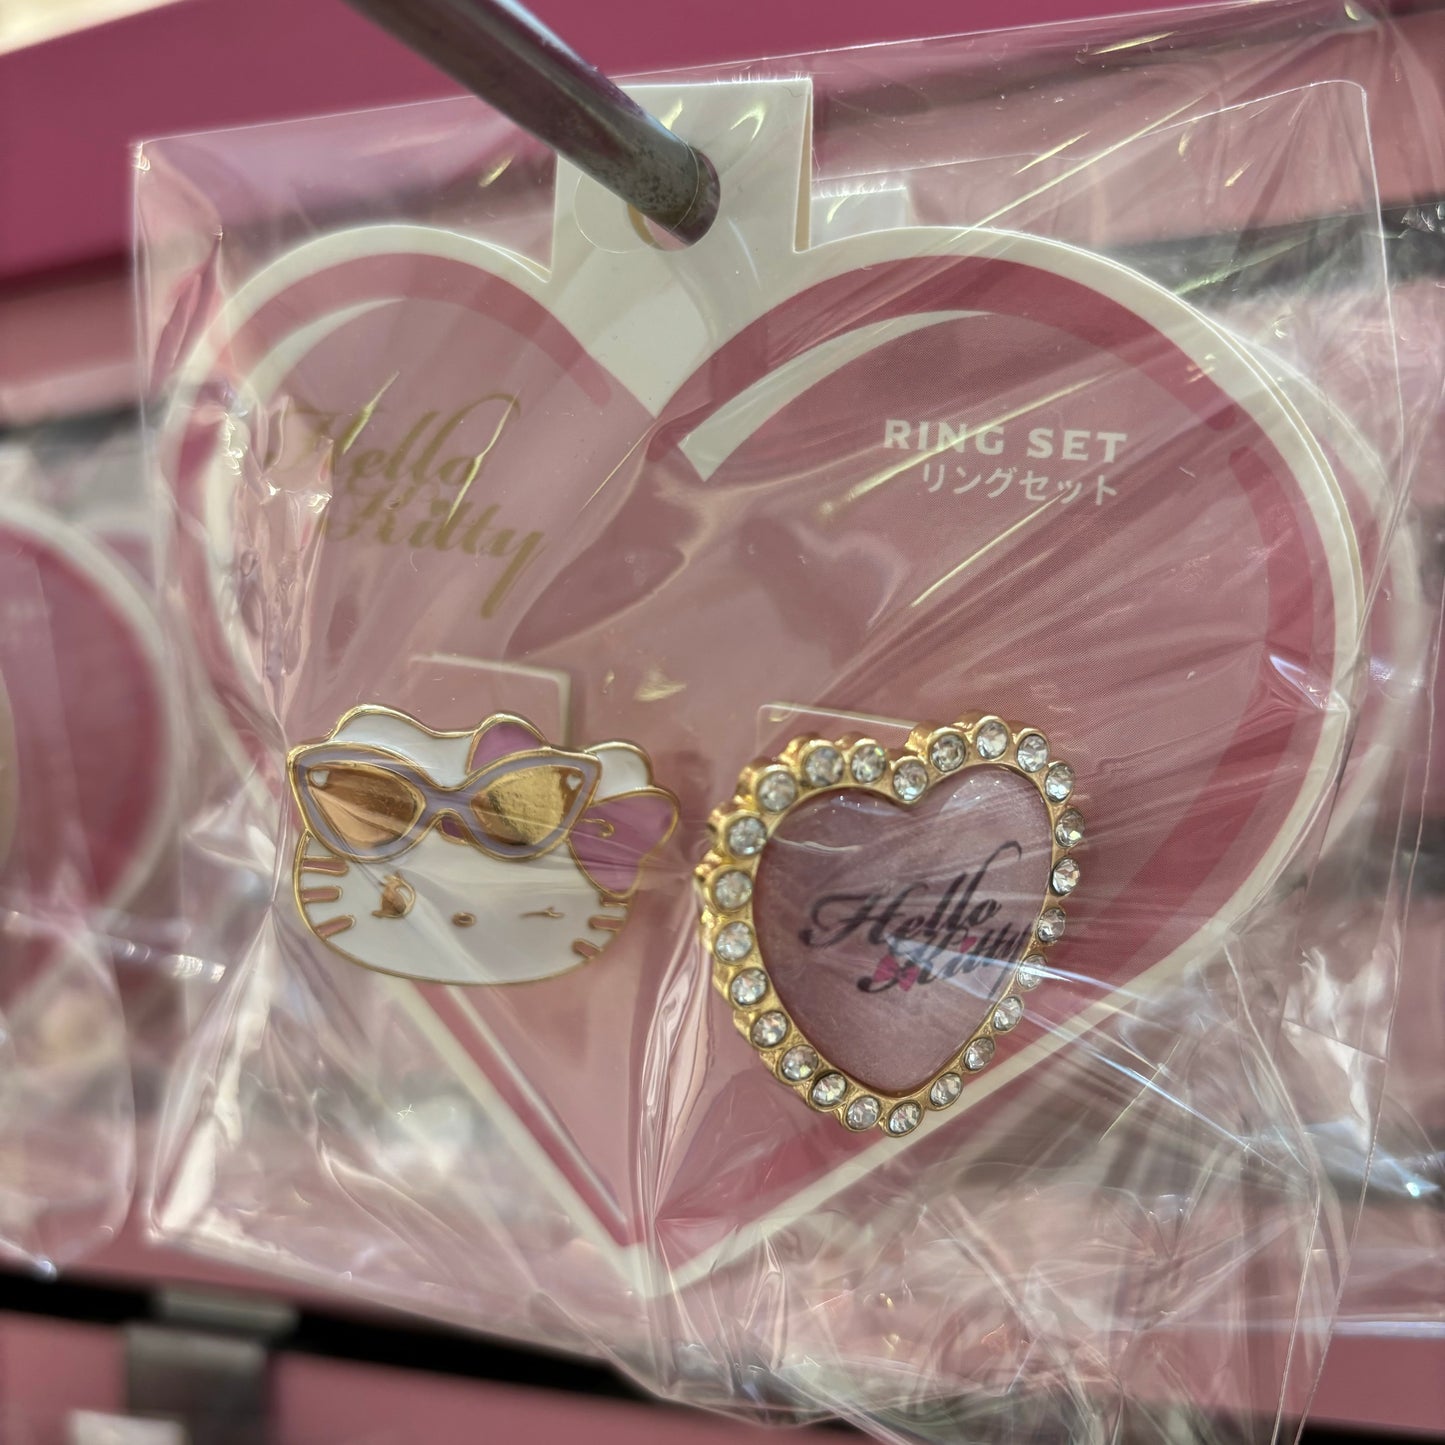 【訂貨】USJ Hello Kitty 春夏蝴蝶結系列 - 卡套 / 鑰匙扣 / 戒指 / 髮夾